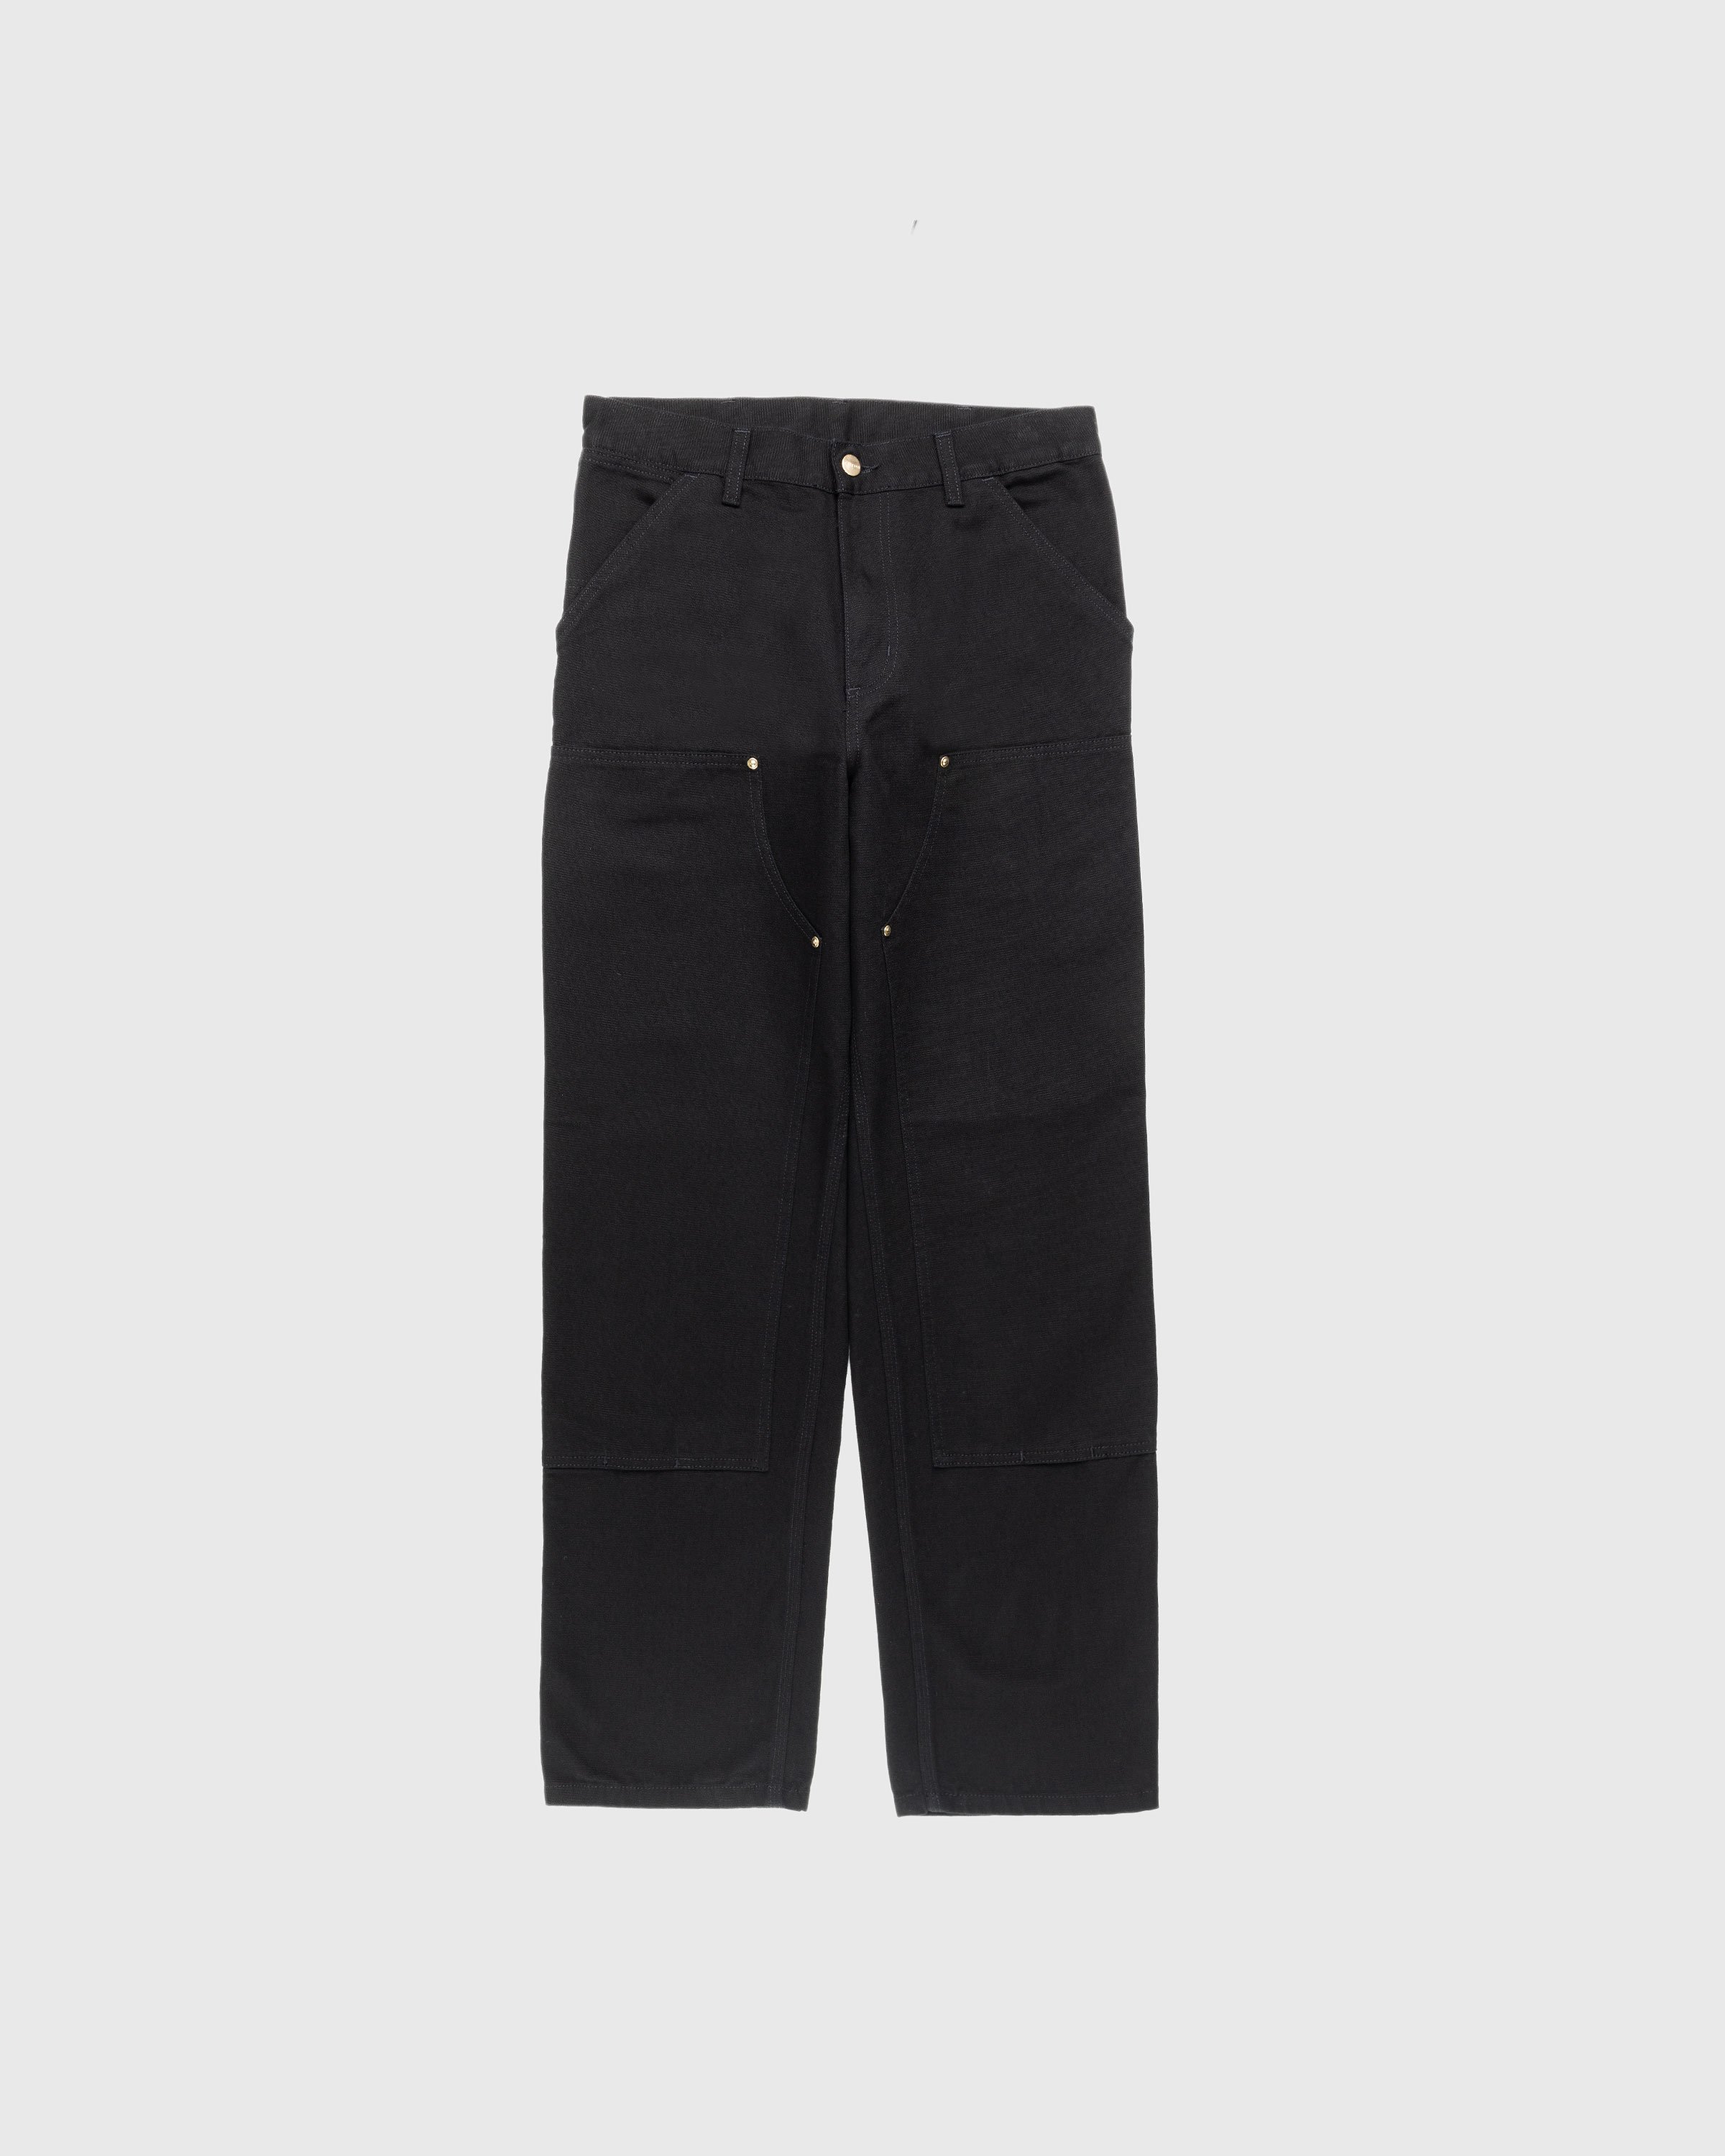 Carhartt WIP - Double Knee Pant Black Rinsed - Clothing - Black - Image 1